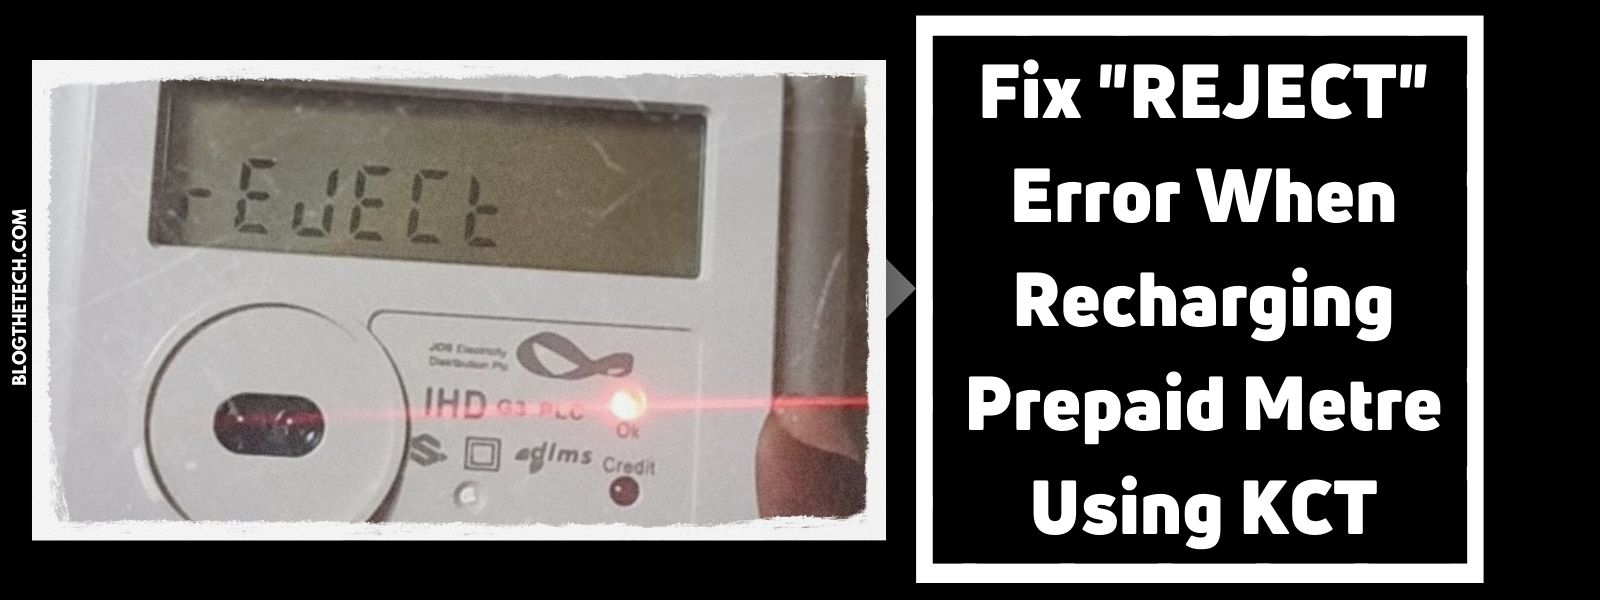 Fix REJECT Error When Recharging Prepaid Metre Using KCT